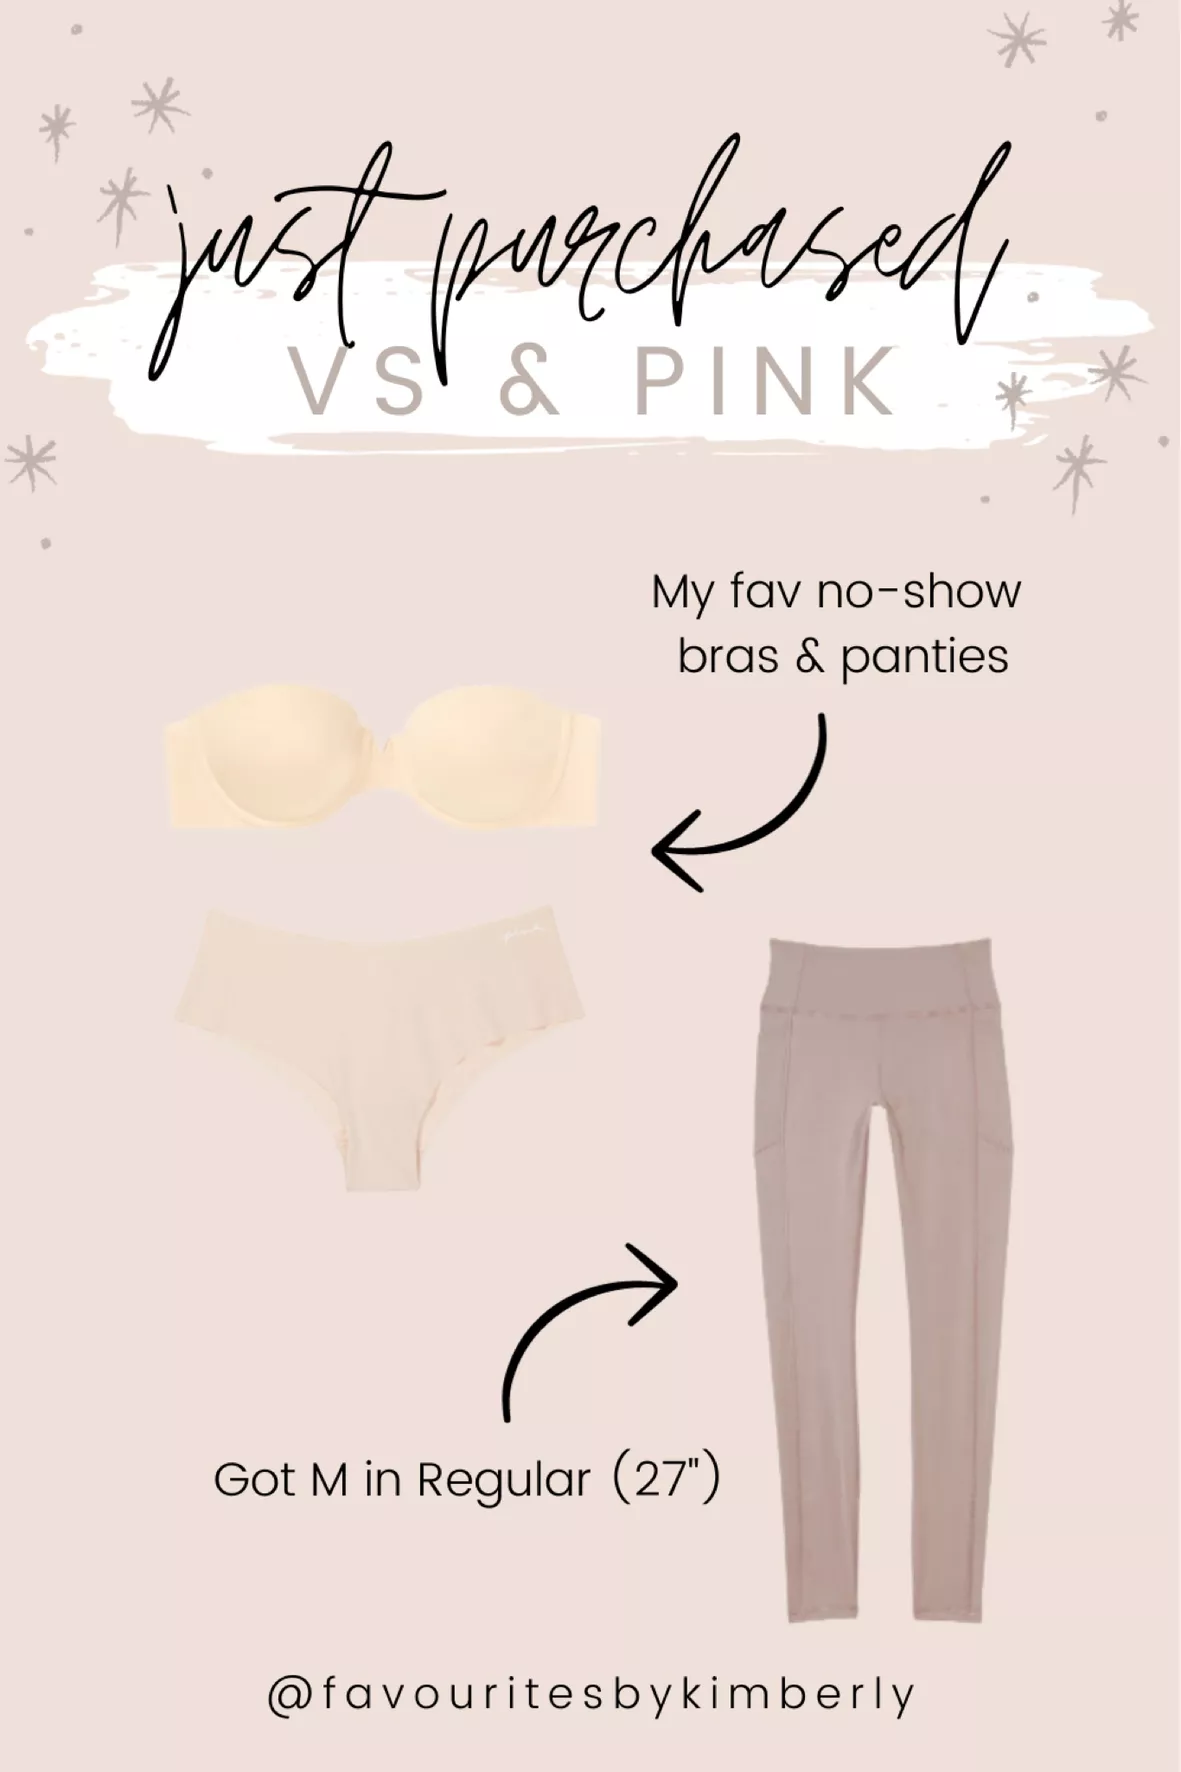 Victoria's Secret Bare - vs curated on LTK